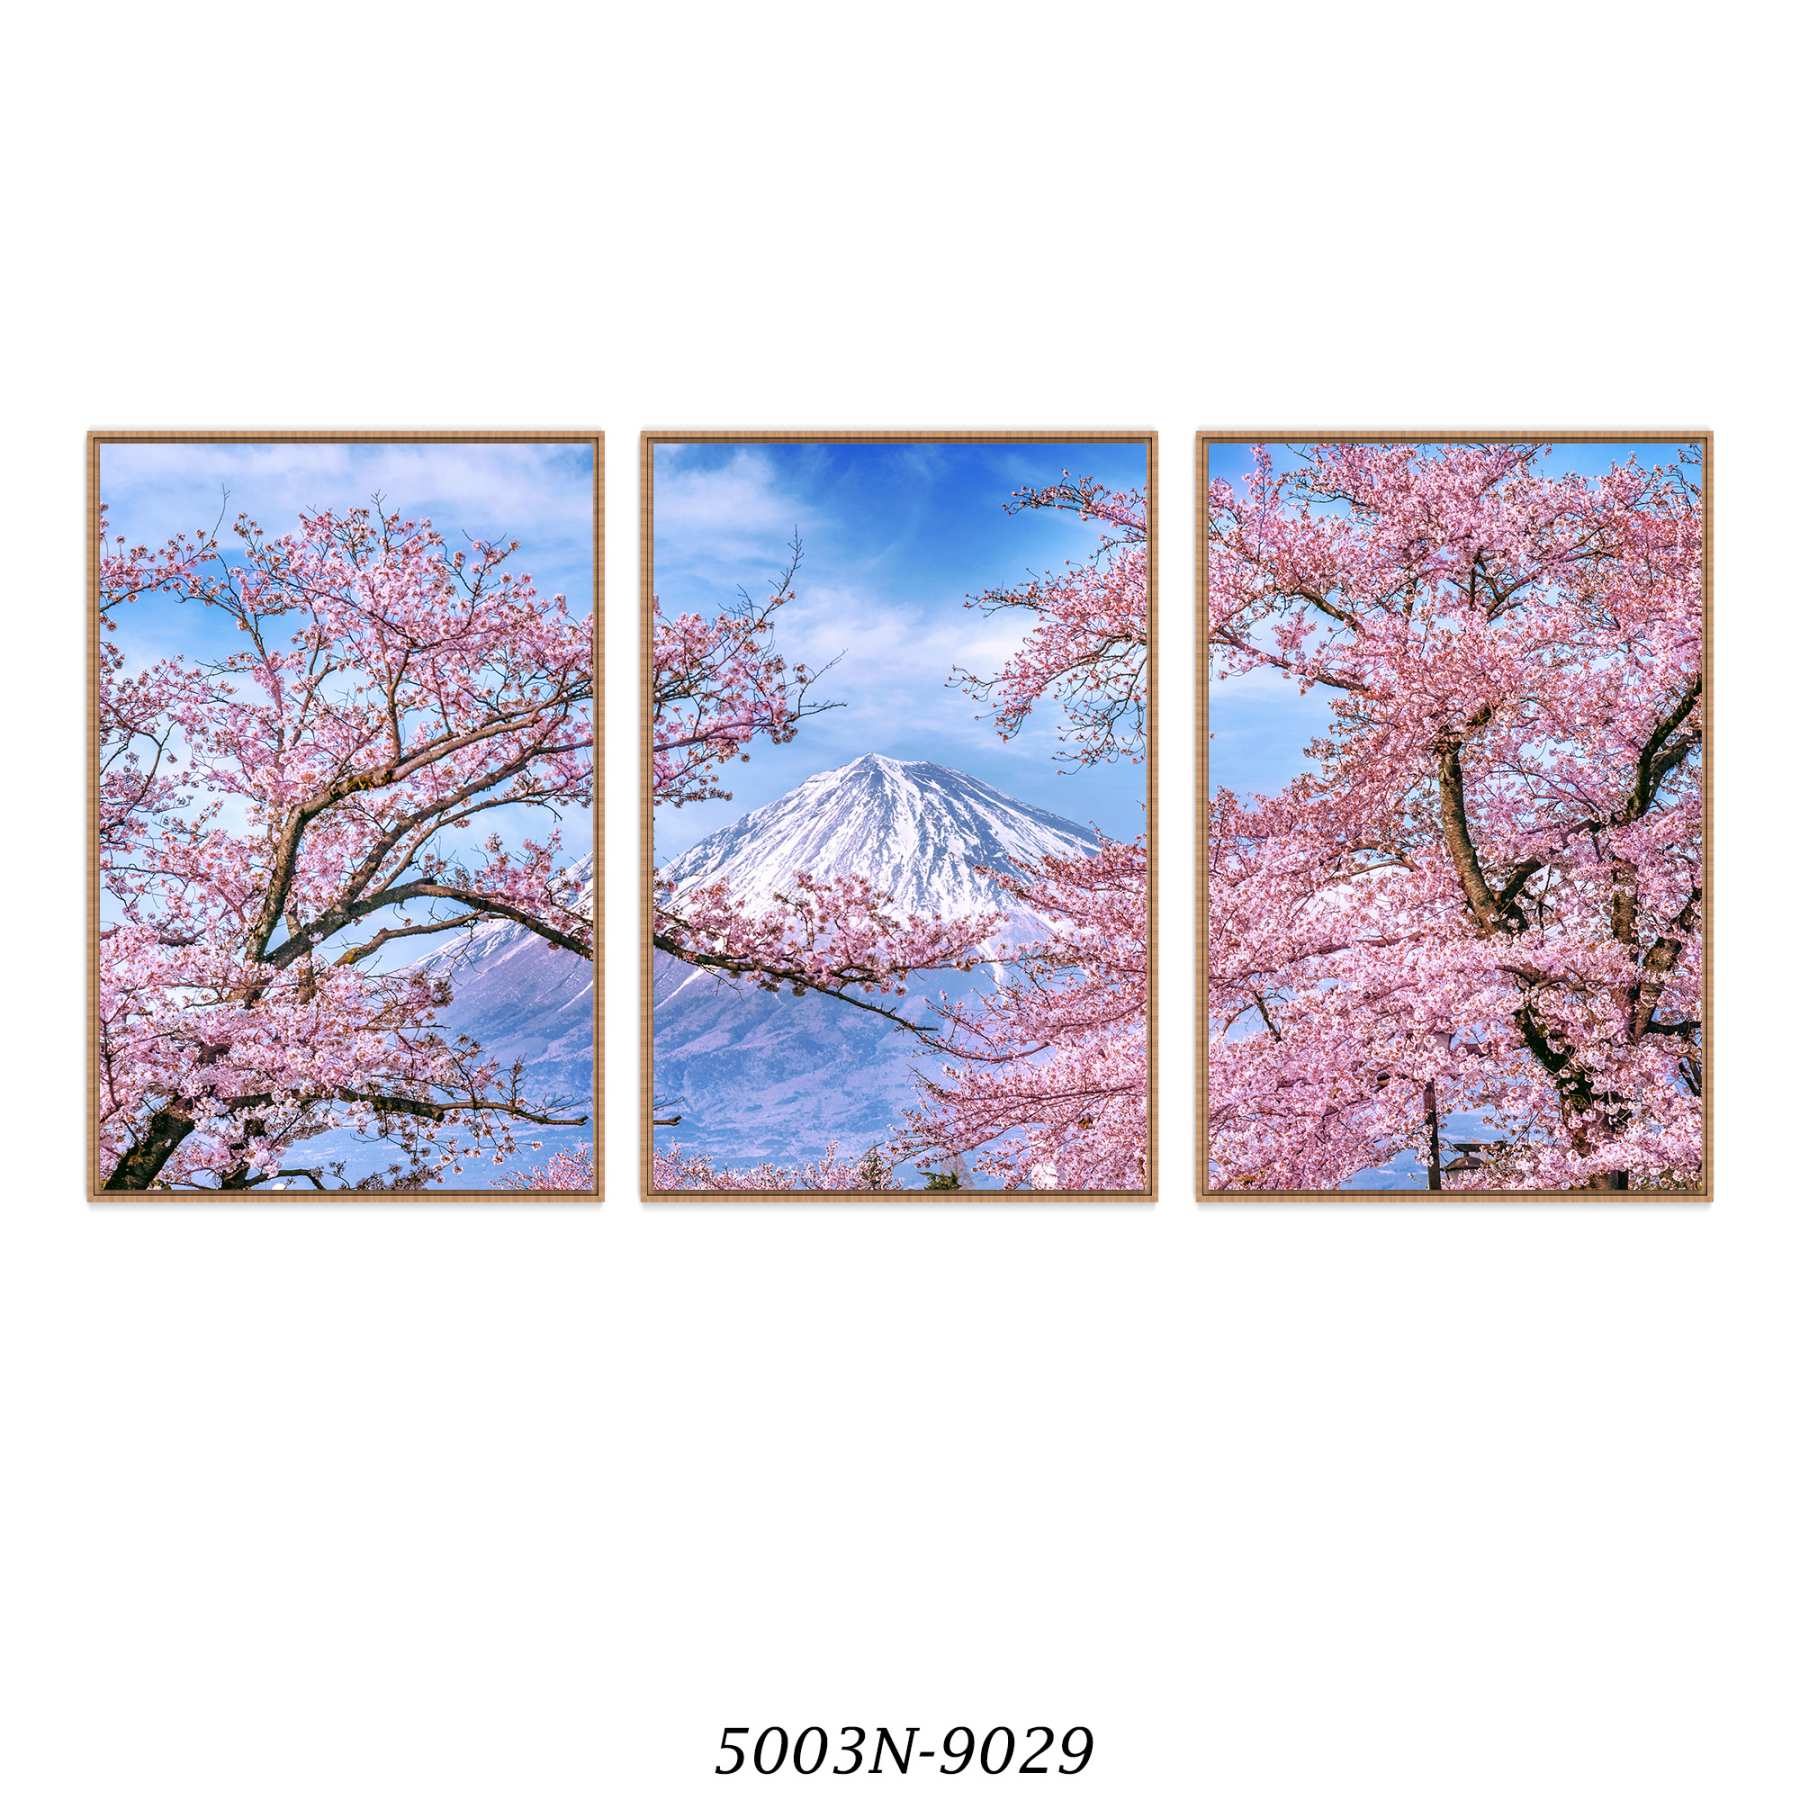 Composição com 3 Quadros Decorativos Flor de Cerejeira e Monte Fuji no Japão